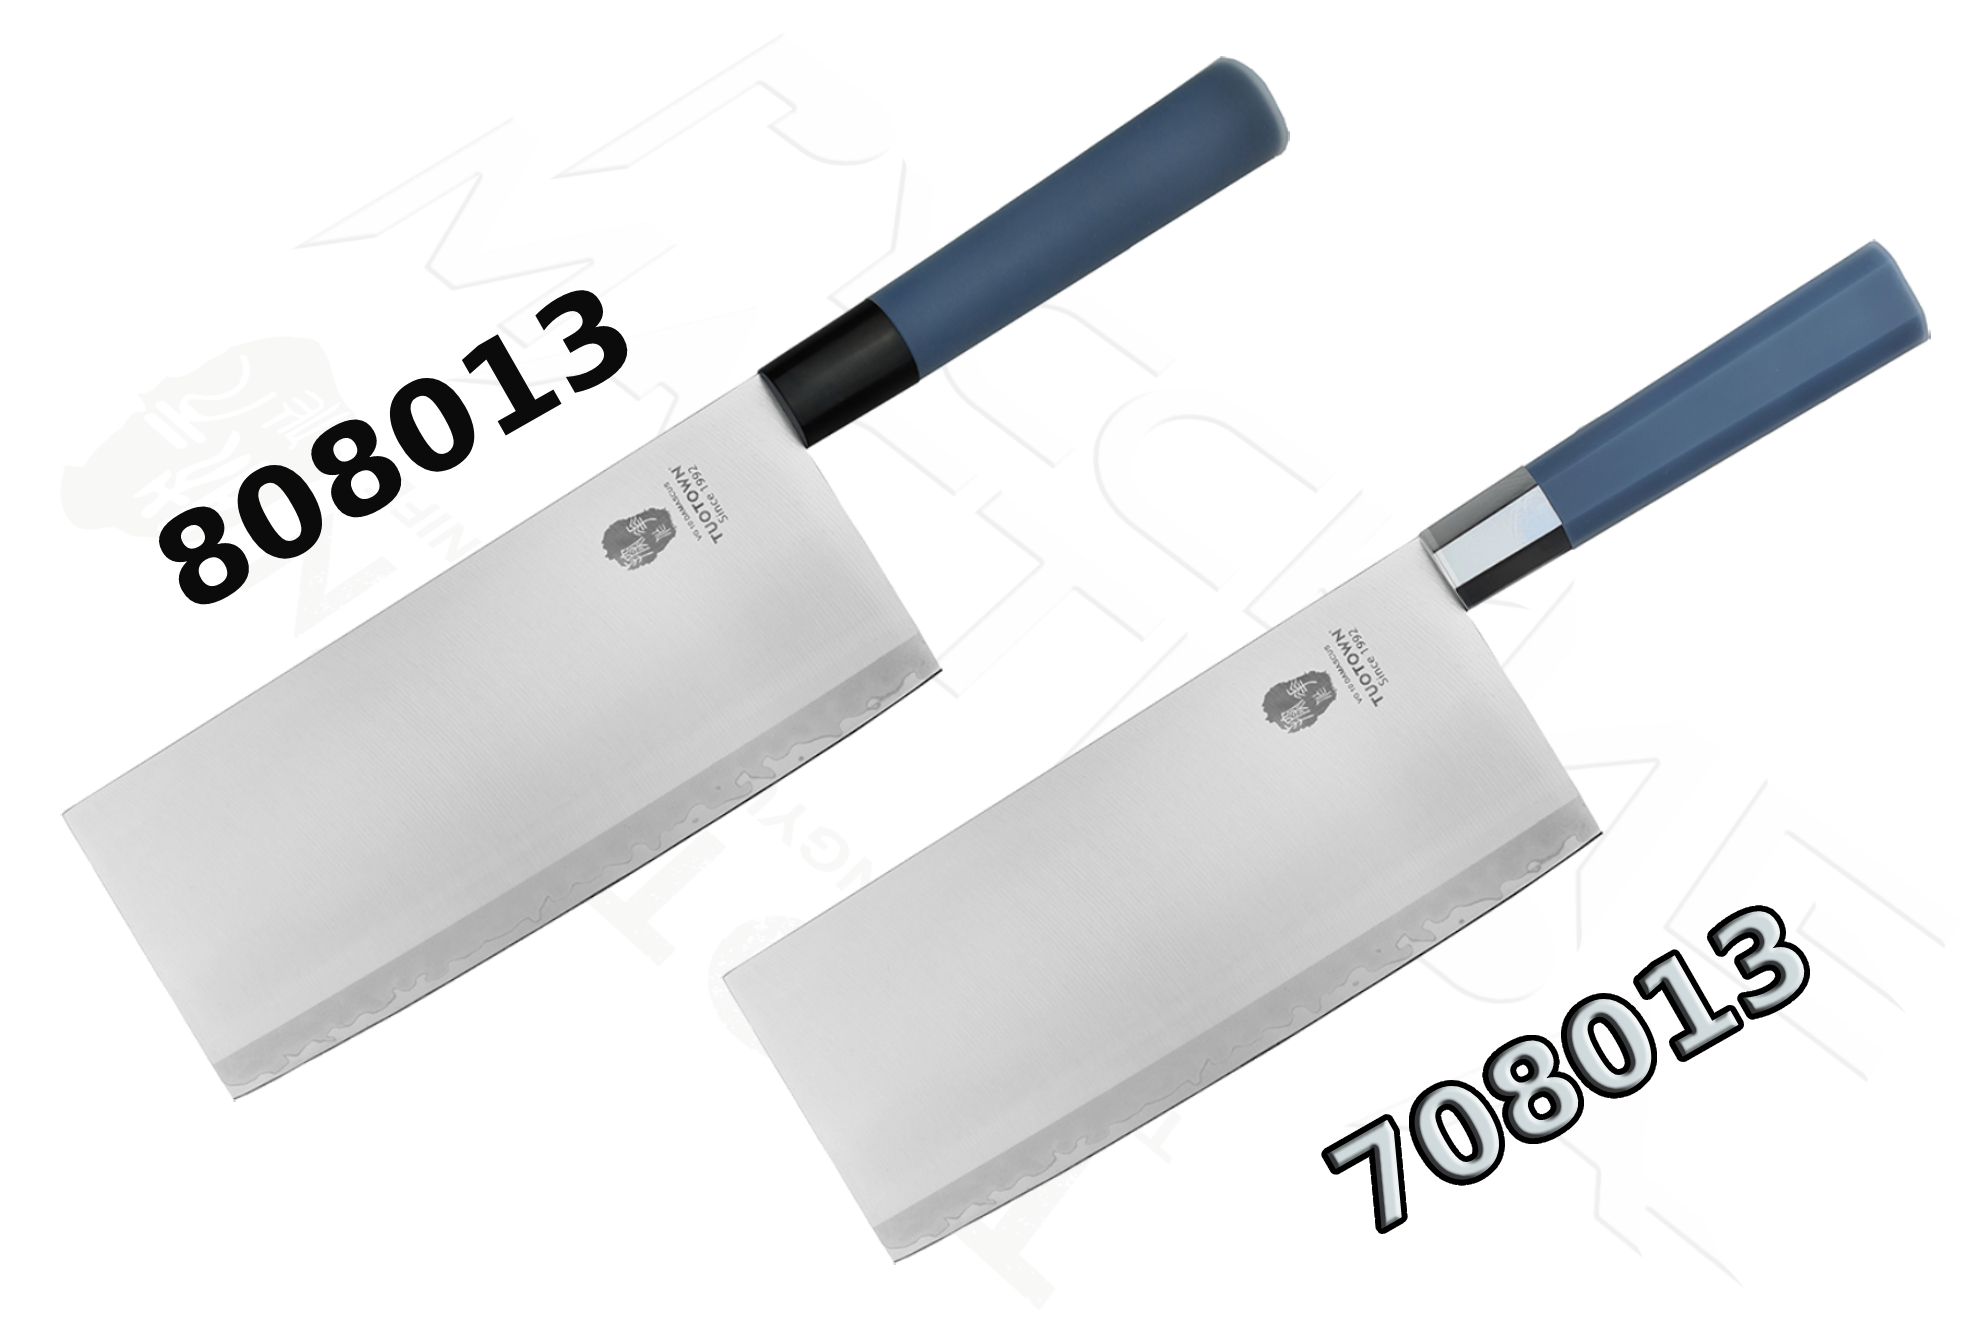 Поварской Санг Дао TUOTOWN CKK 708013 и 808013 (CL190, 20 см), из ламинированной стали.